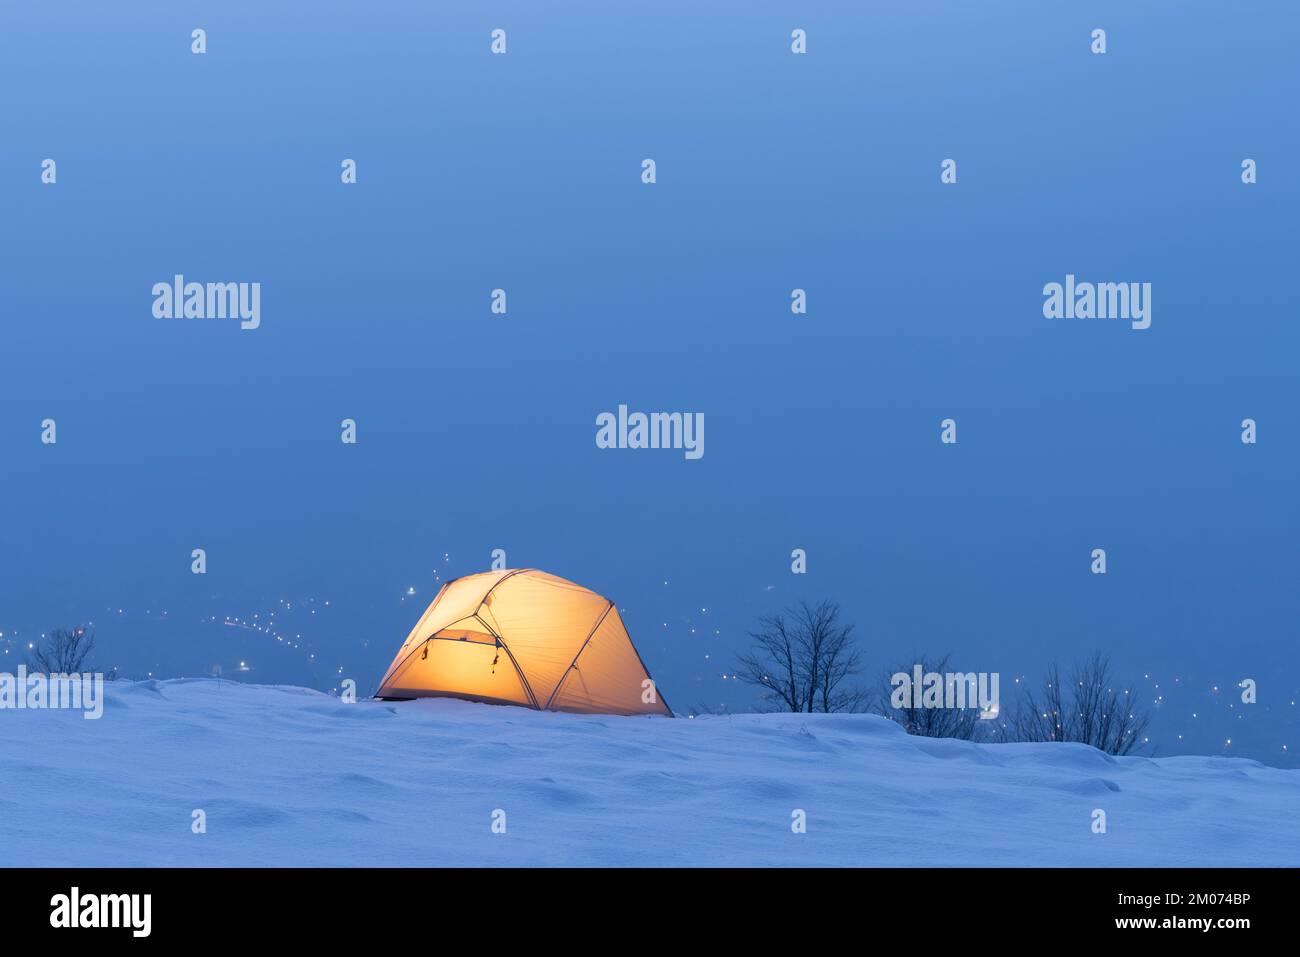 Tente d'hiver campant dans la neige Banque D'Images